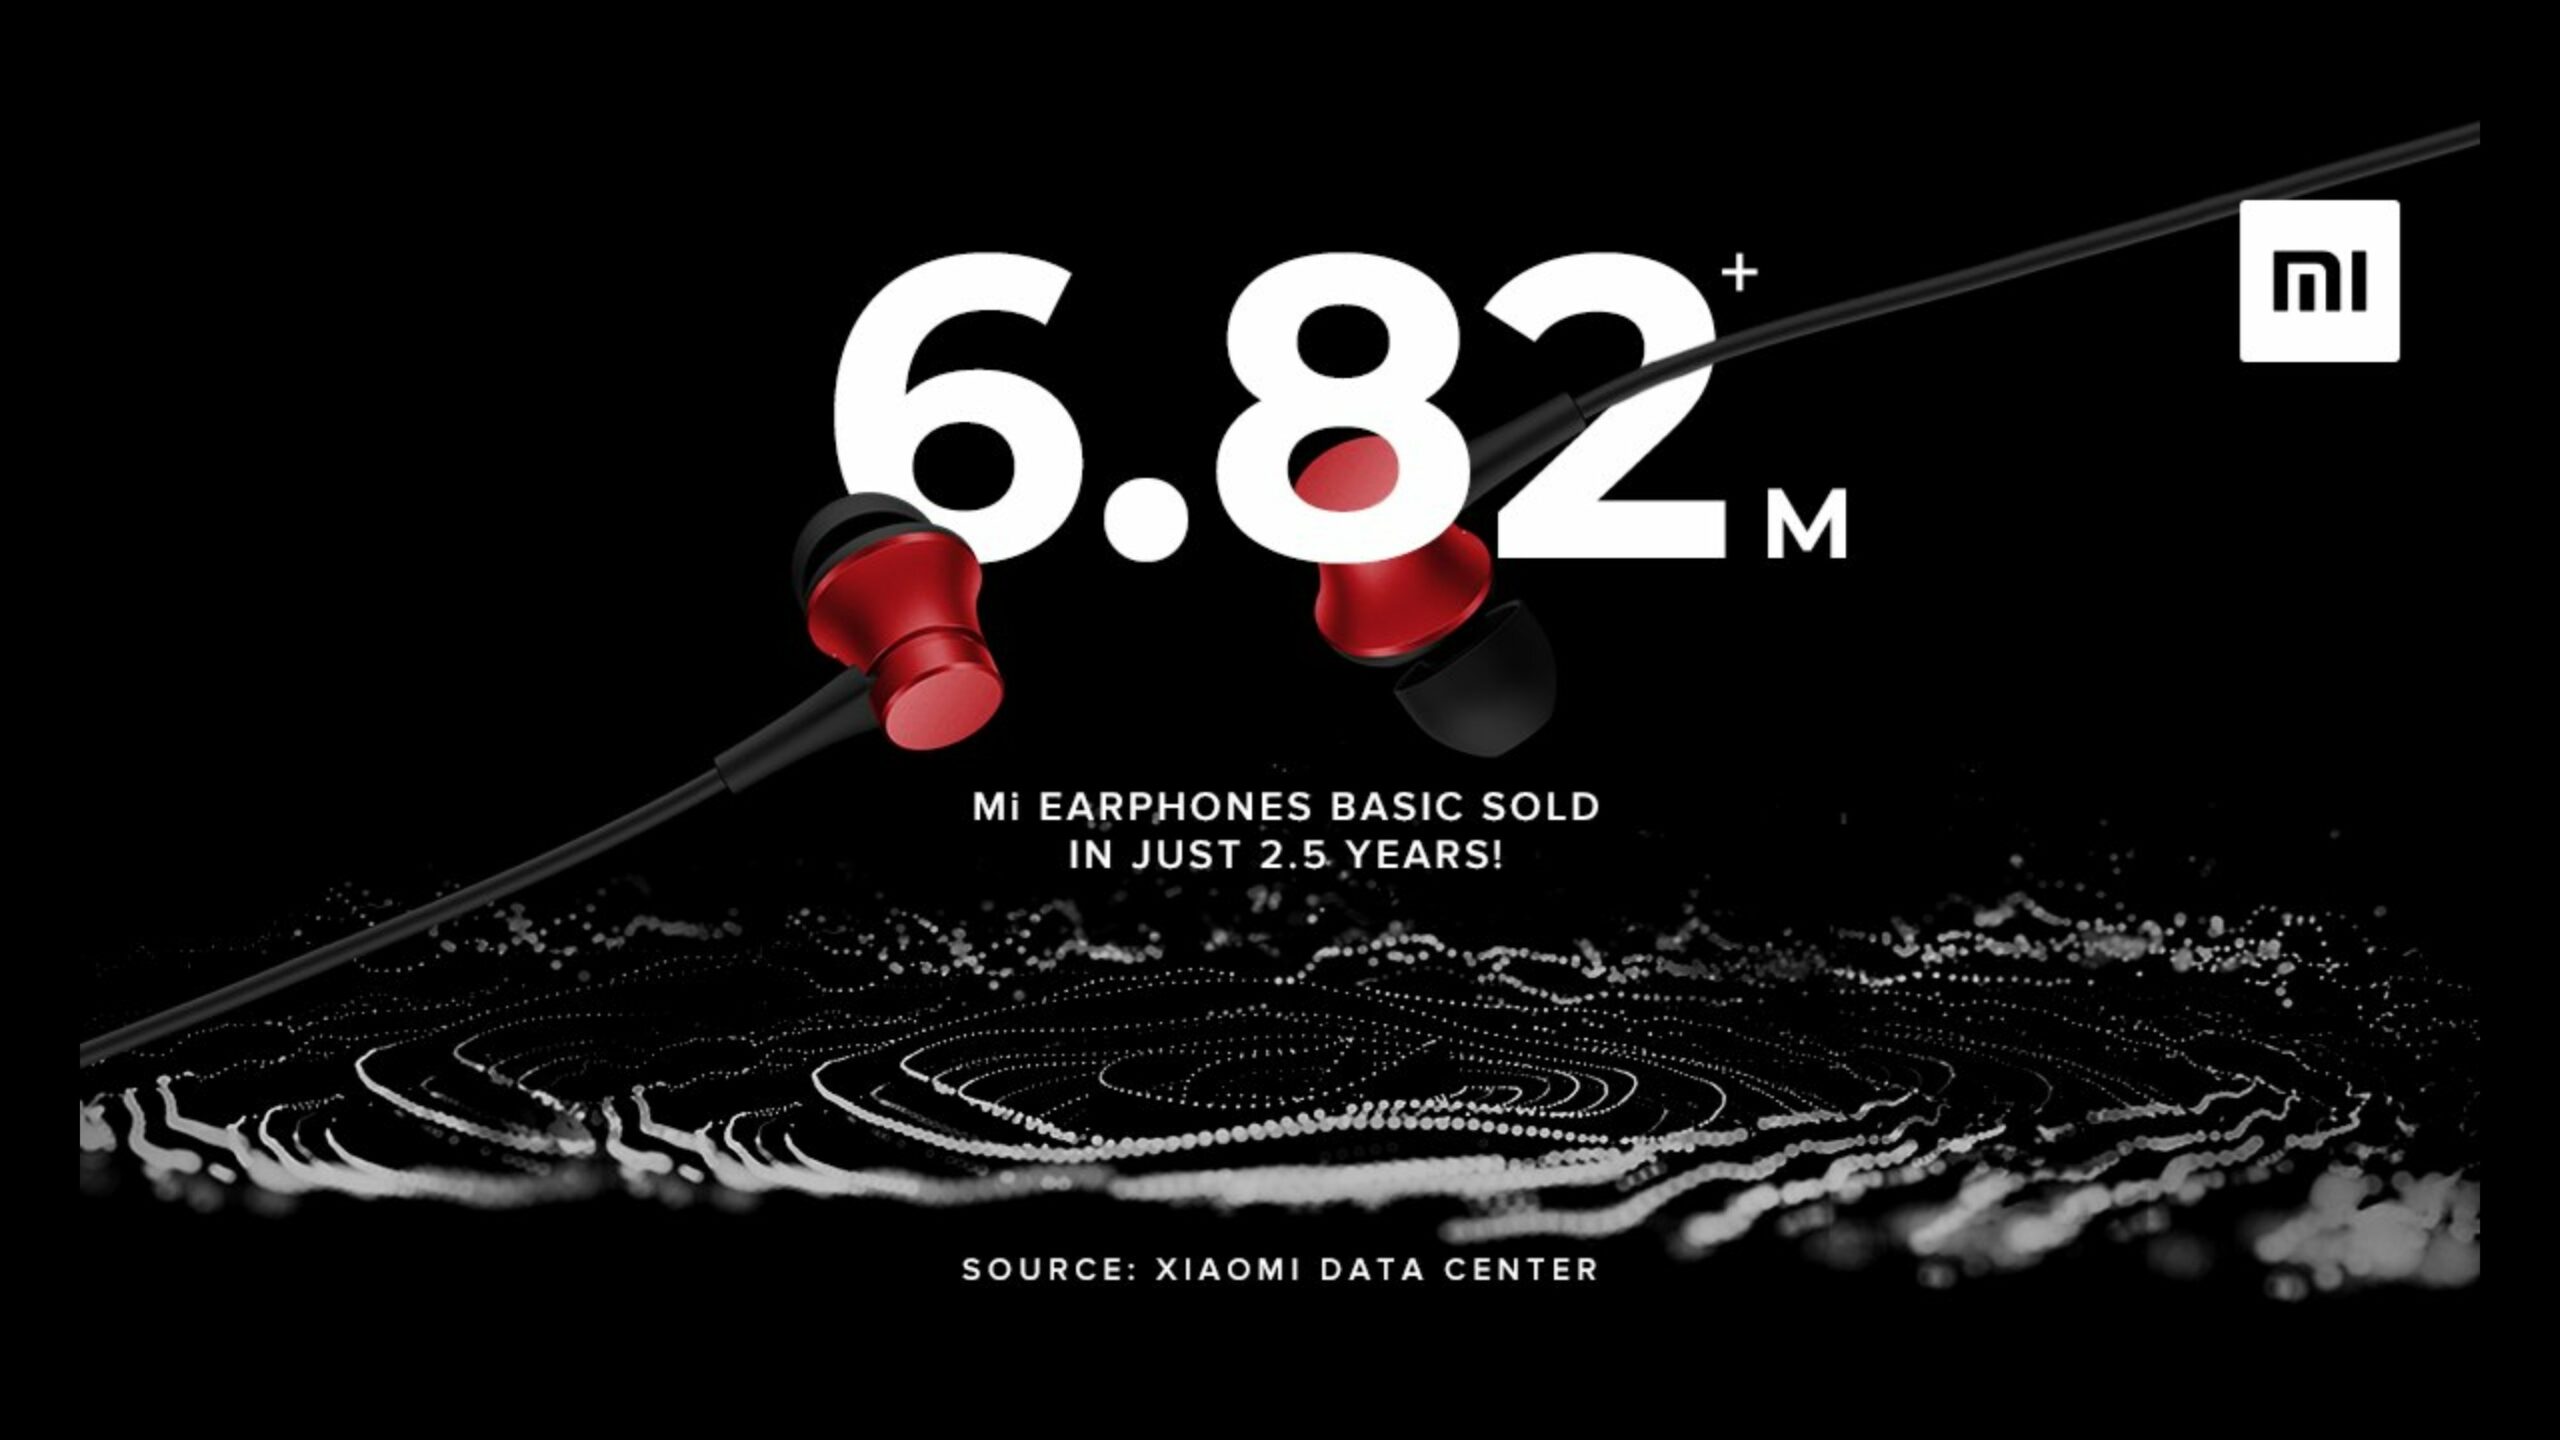 Sluchátka Xiaomi Mi Basic přes 6.82 milionu jednotek prodaných za 2.5 roku